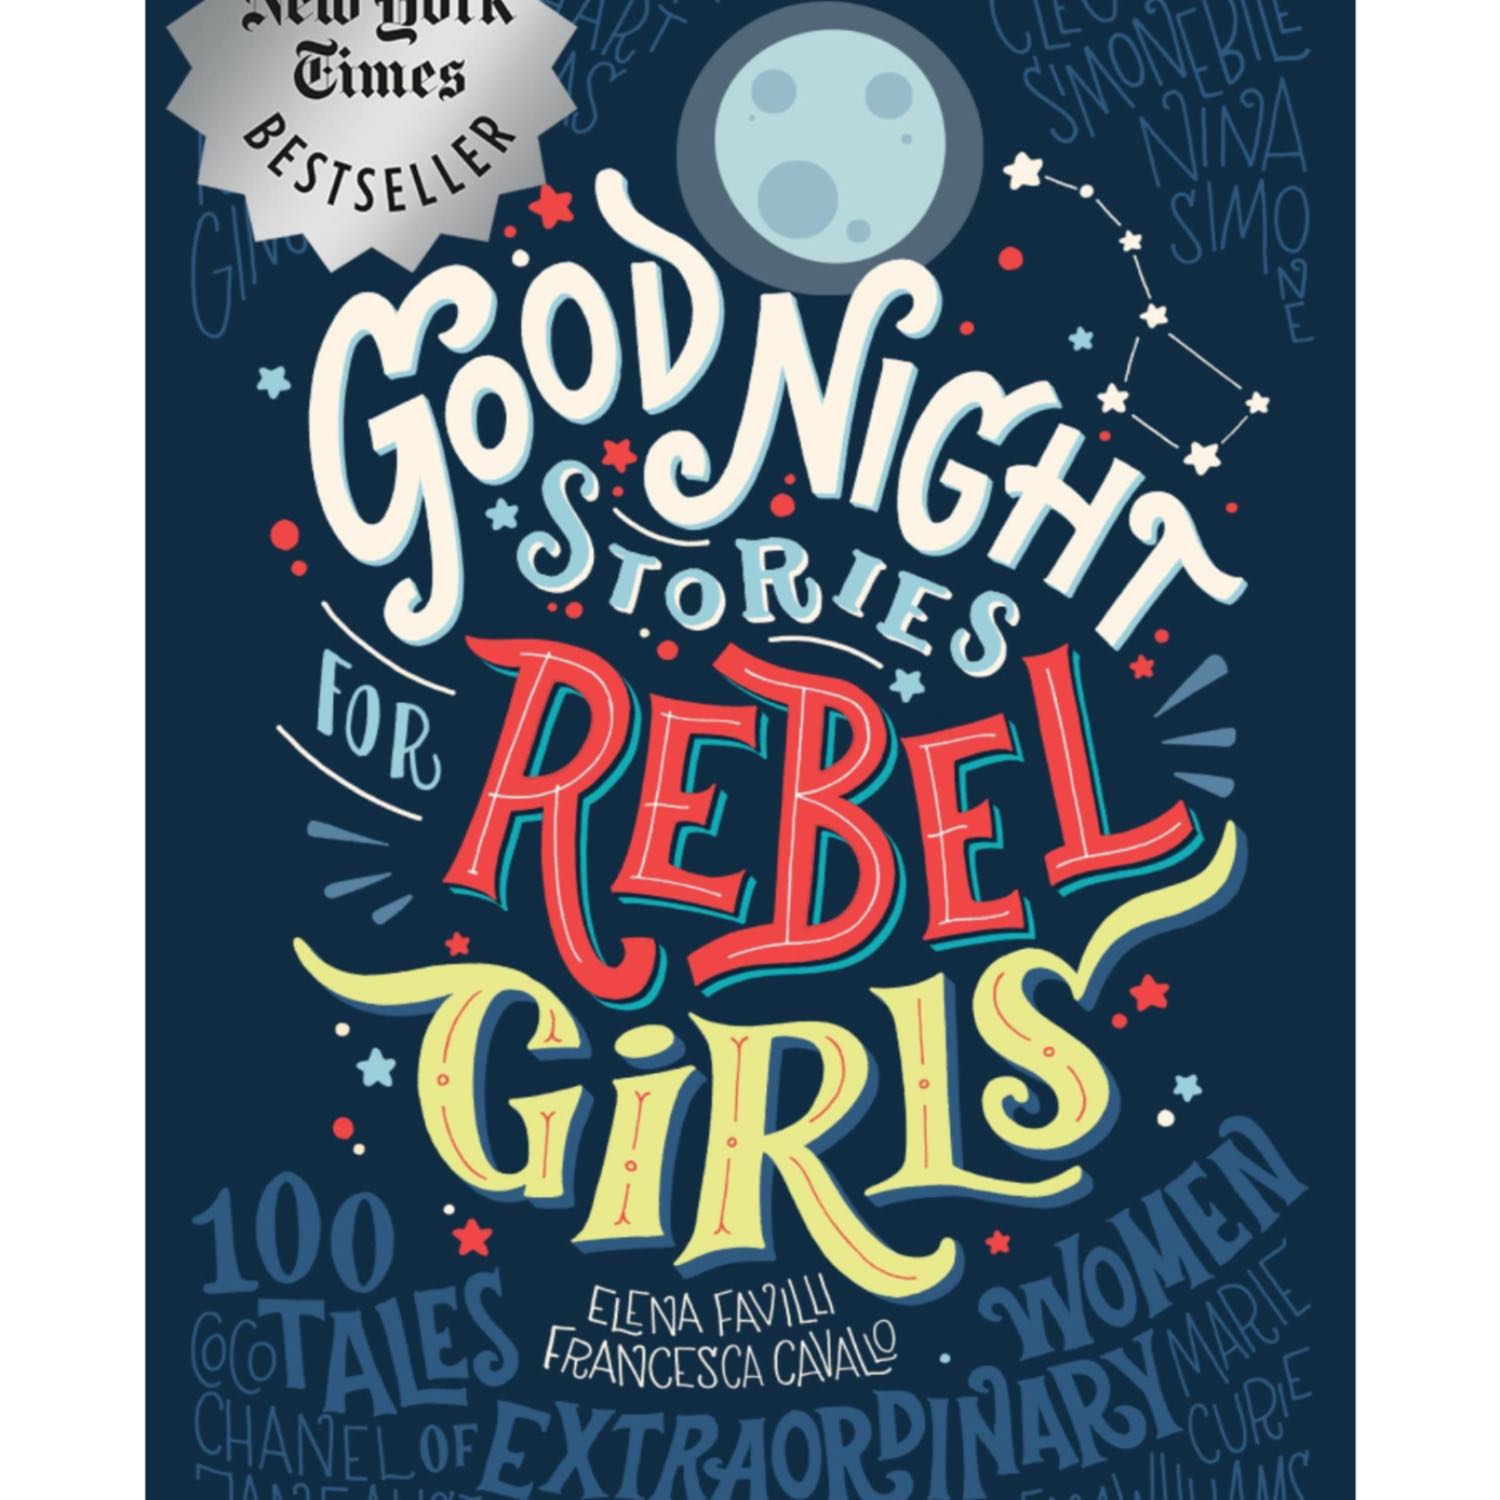 Goodnight Stories for Rebel Girls: Melba Liston